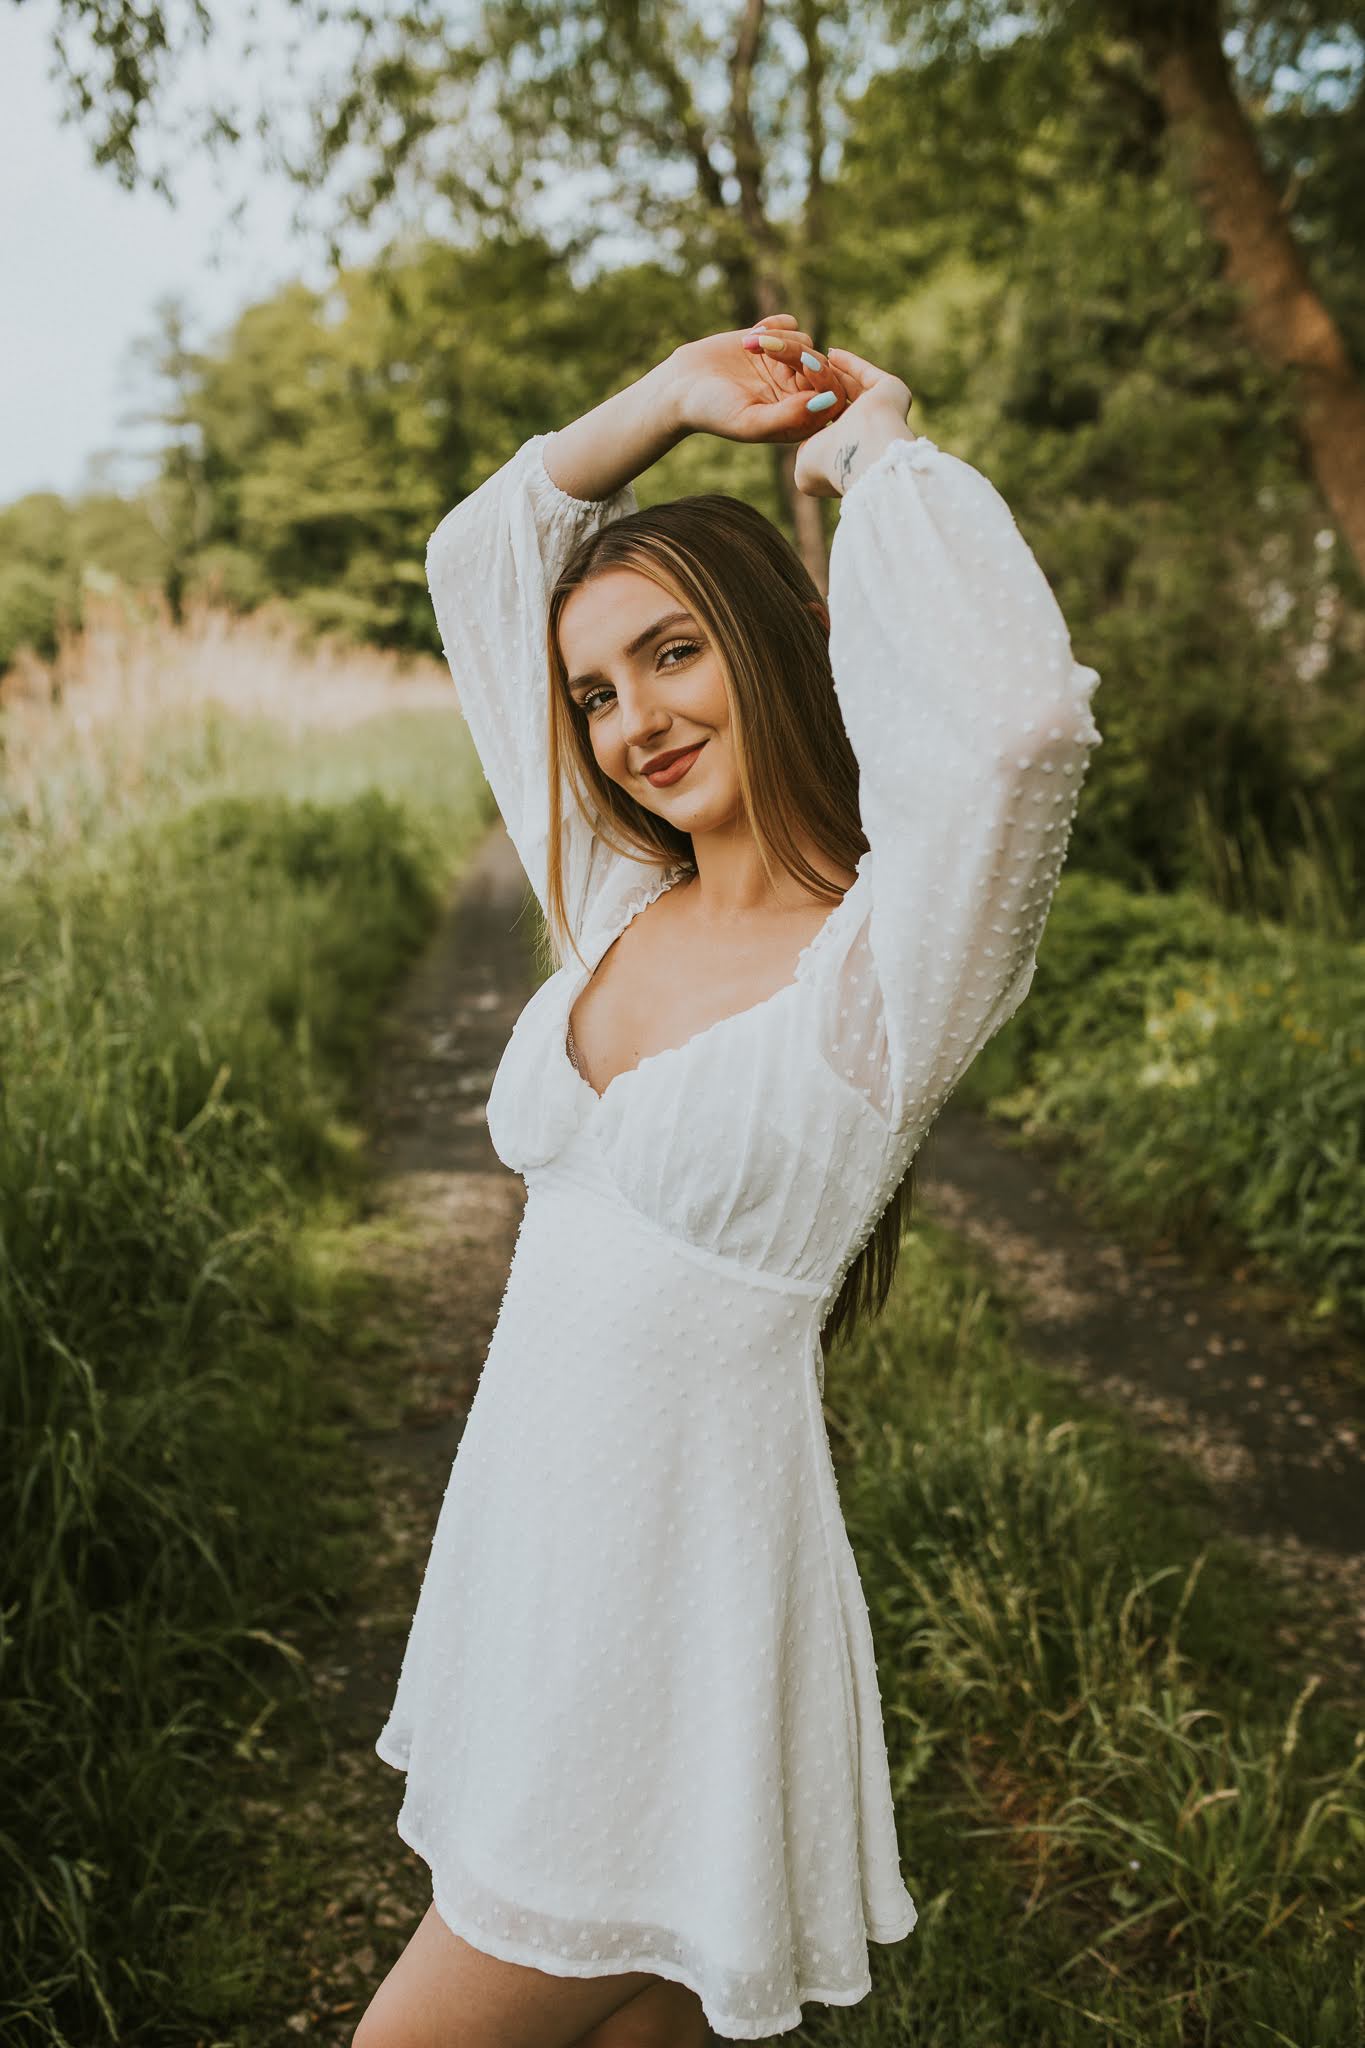 Uśmiechnięta dziewczyna z rękoma w górze w białej sukience